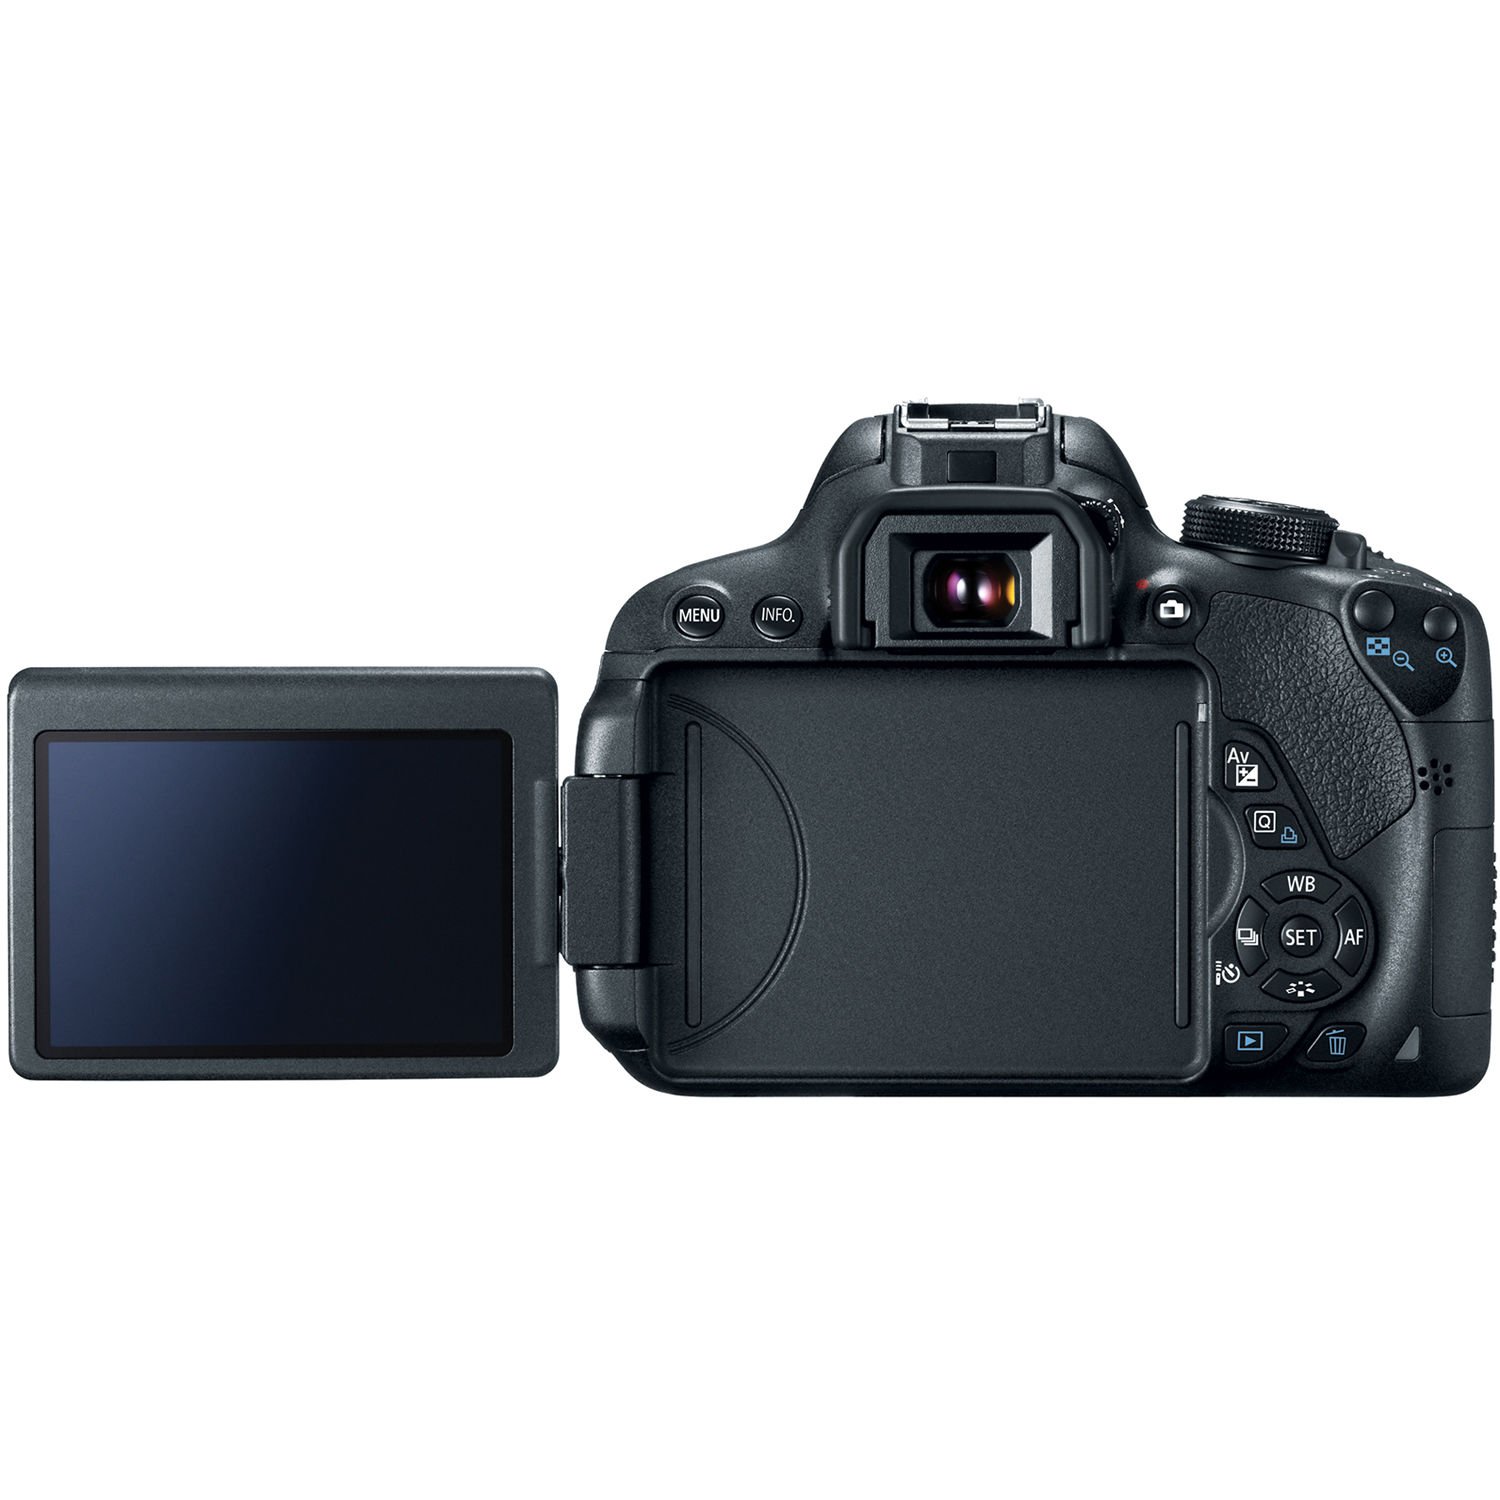 Canon EOS 700D với thiết kế gương lật chắc chắn 